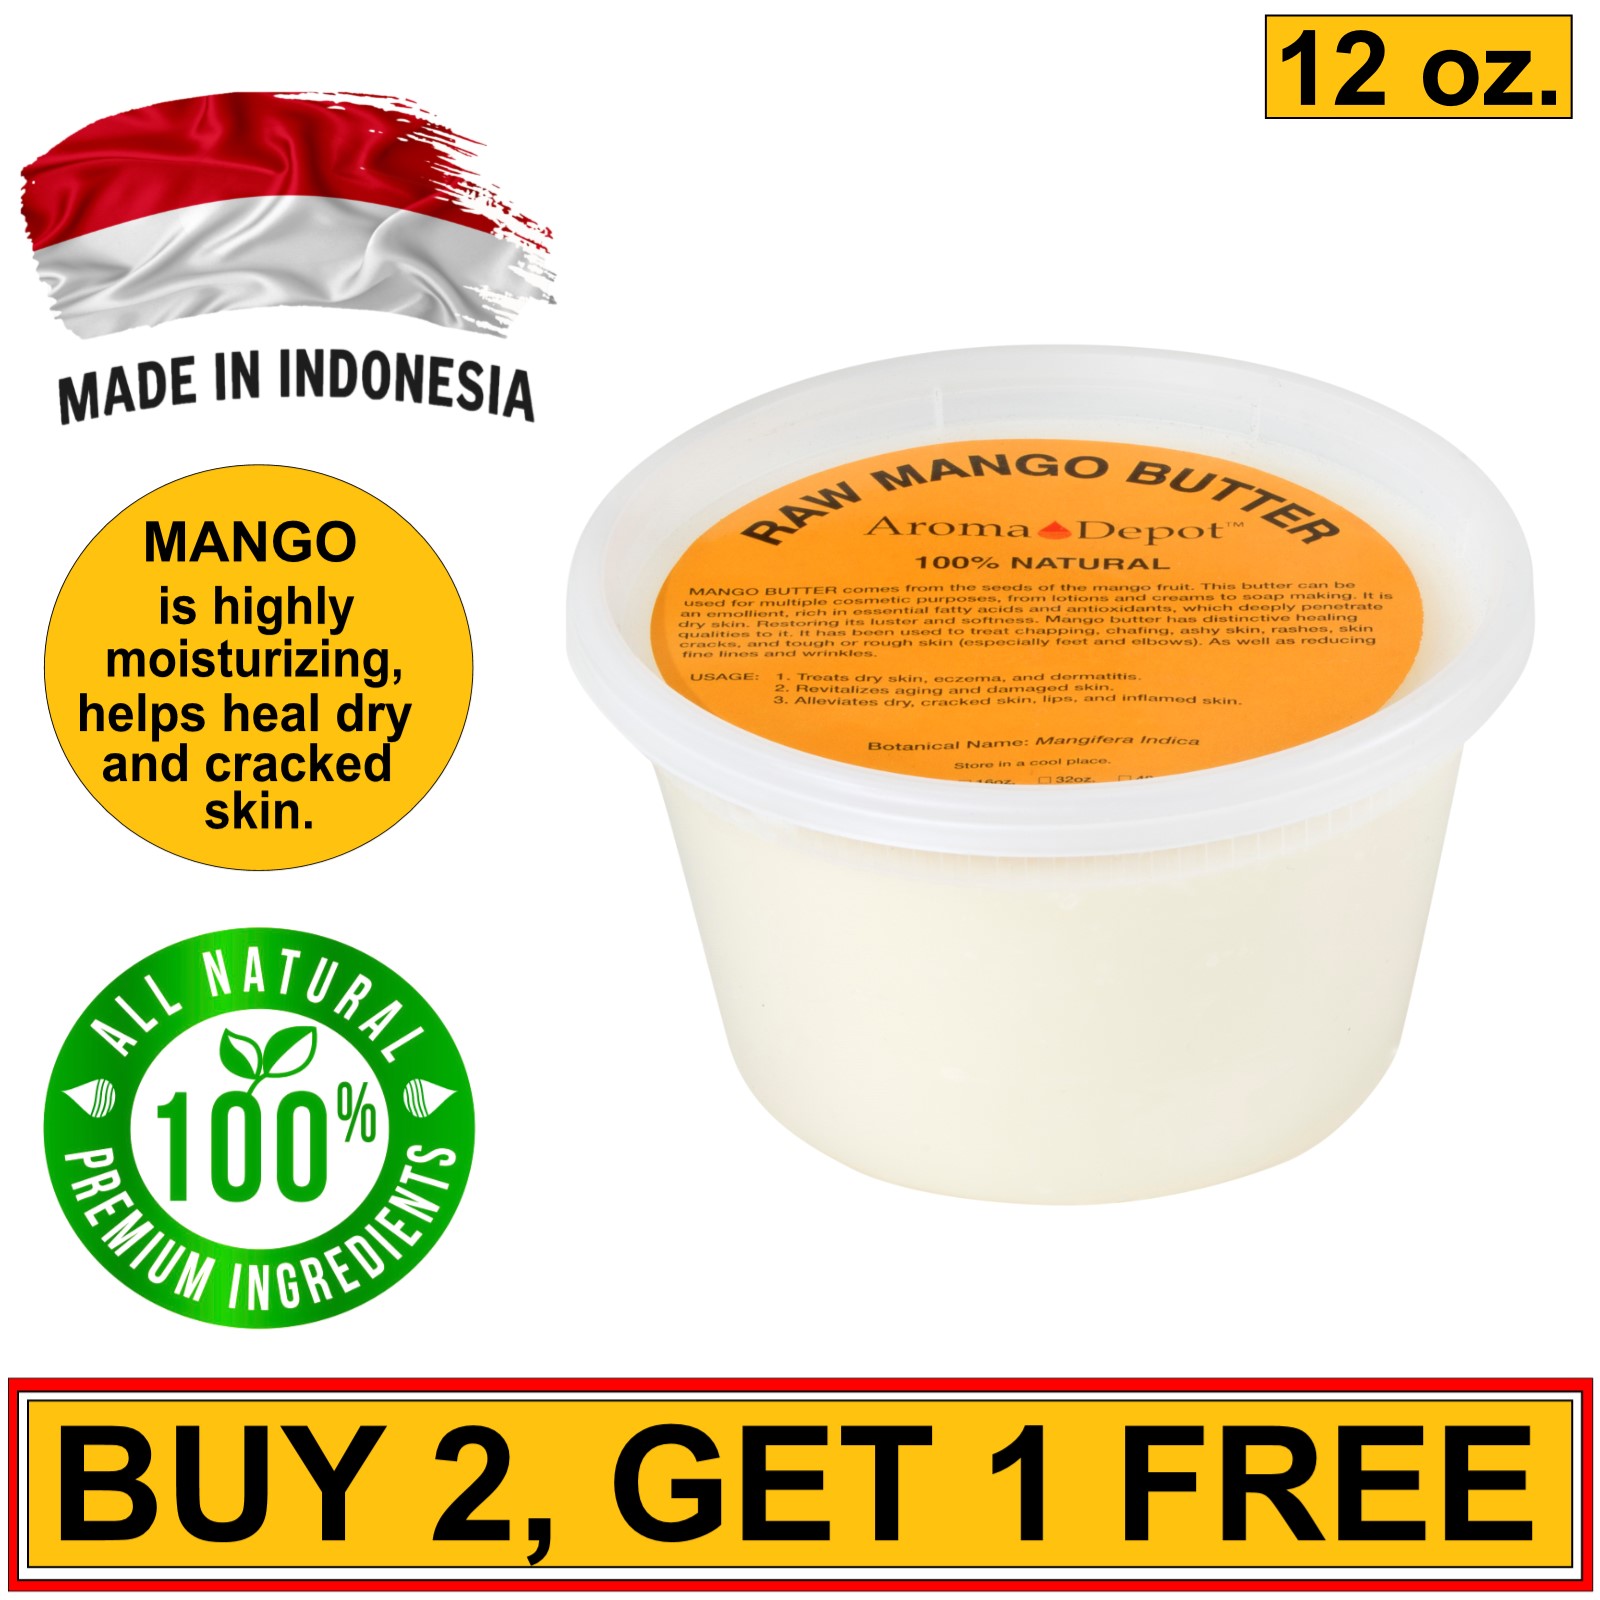 12 oz. Mango Butter